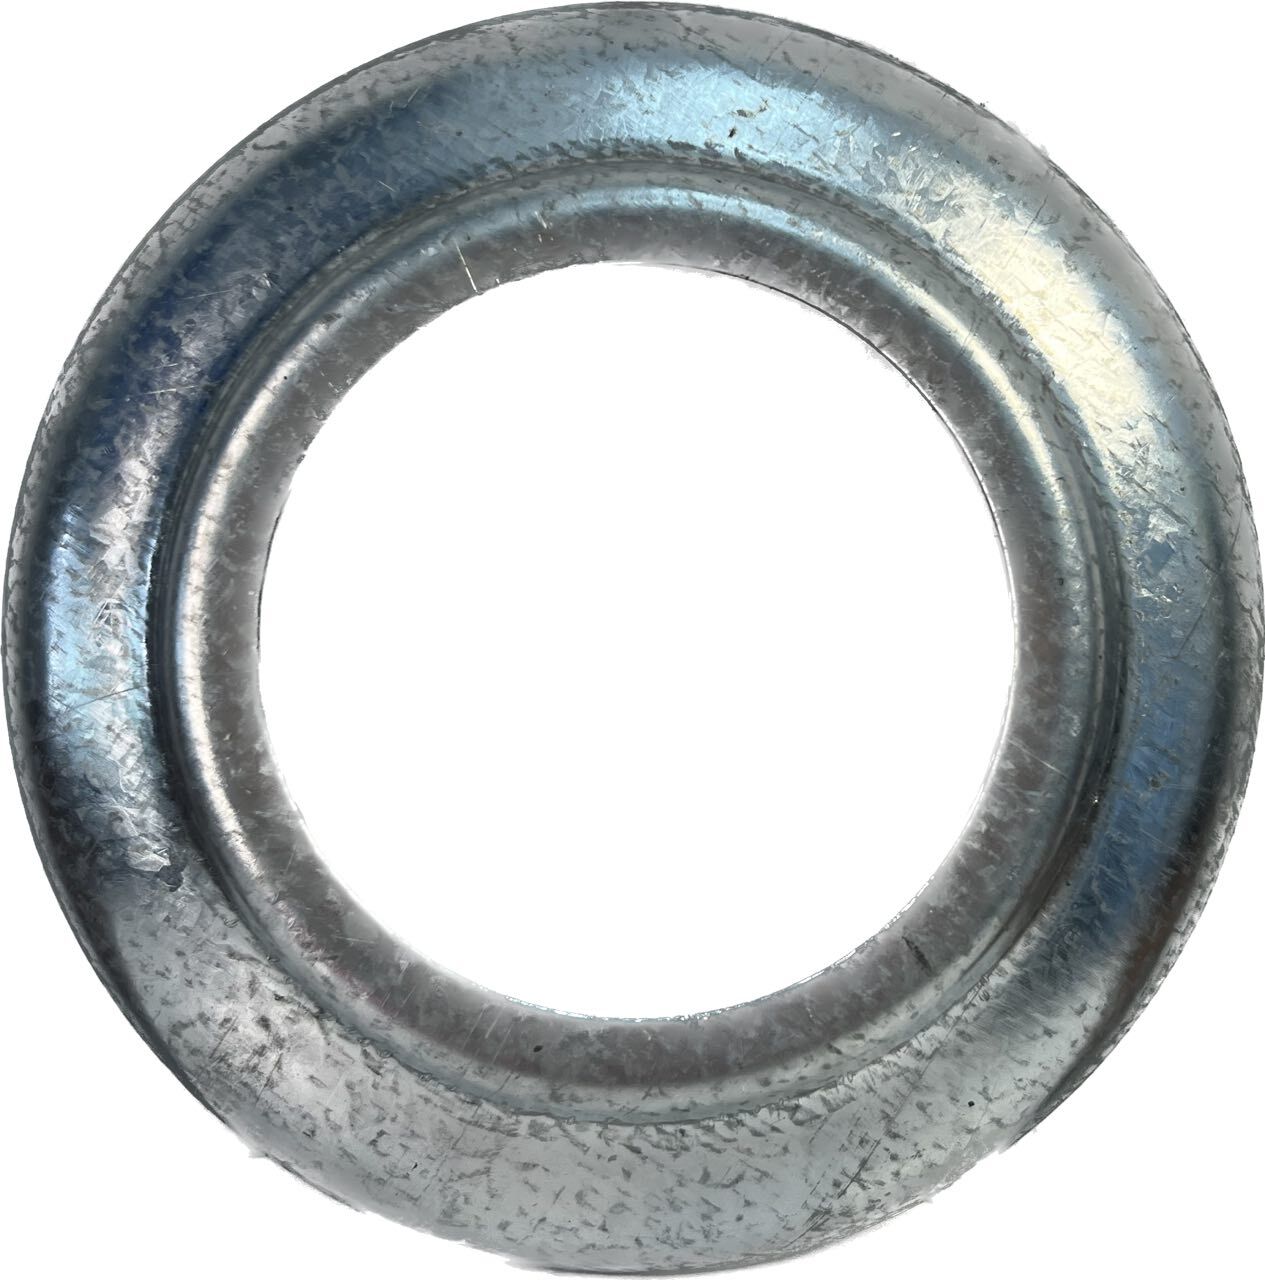 Маслосбрасывающее кольцо (302-5-01-0-07, 28-106) или тарелка втулки коленвала к компрессору 4ВУ1-5/9, К-5М, КСЭ-5М